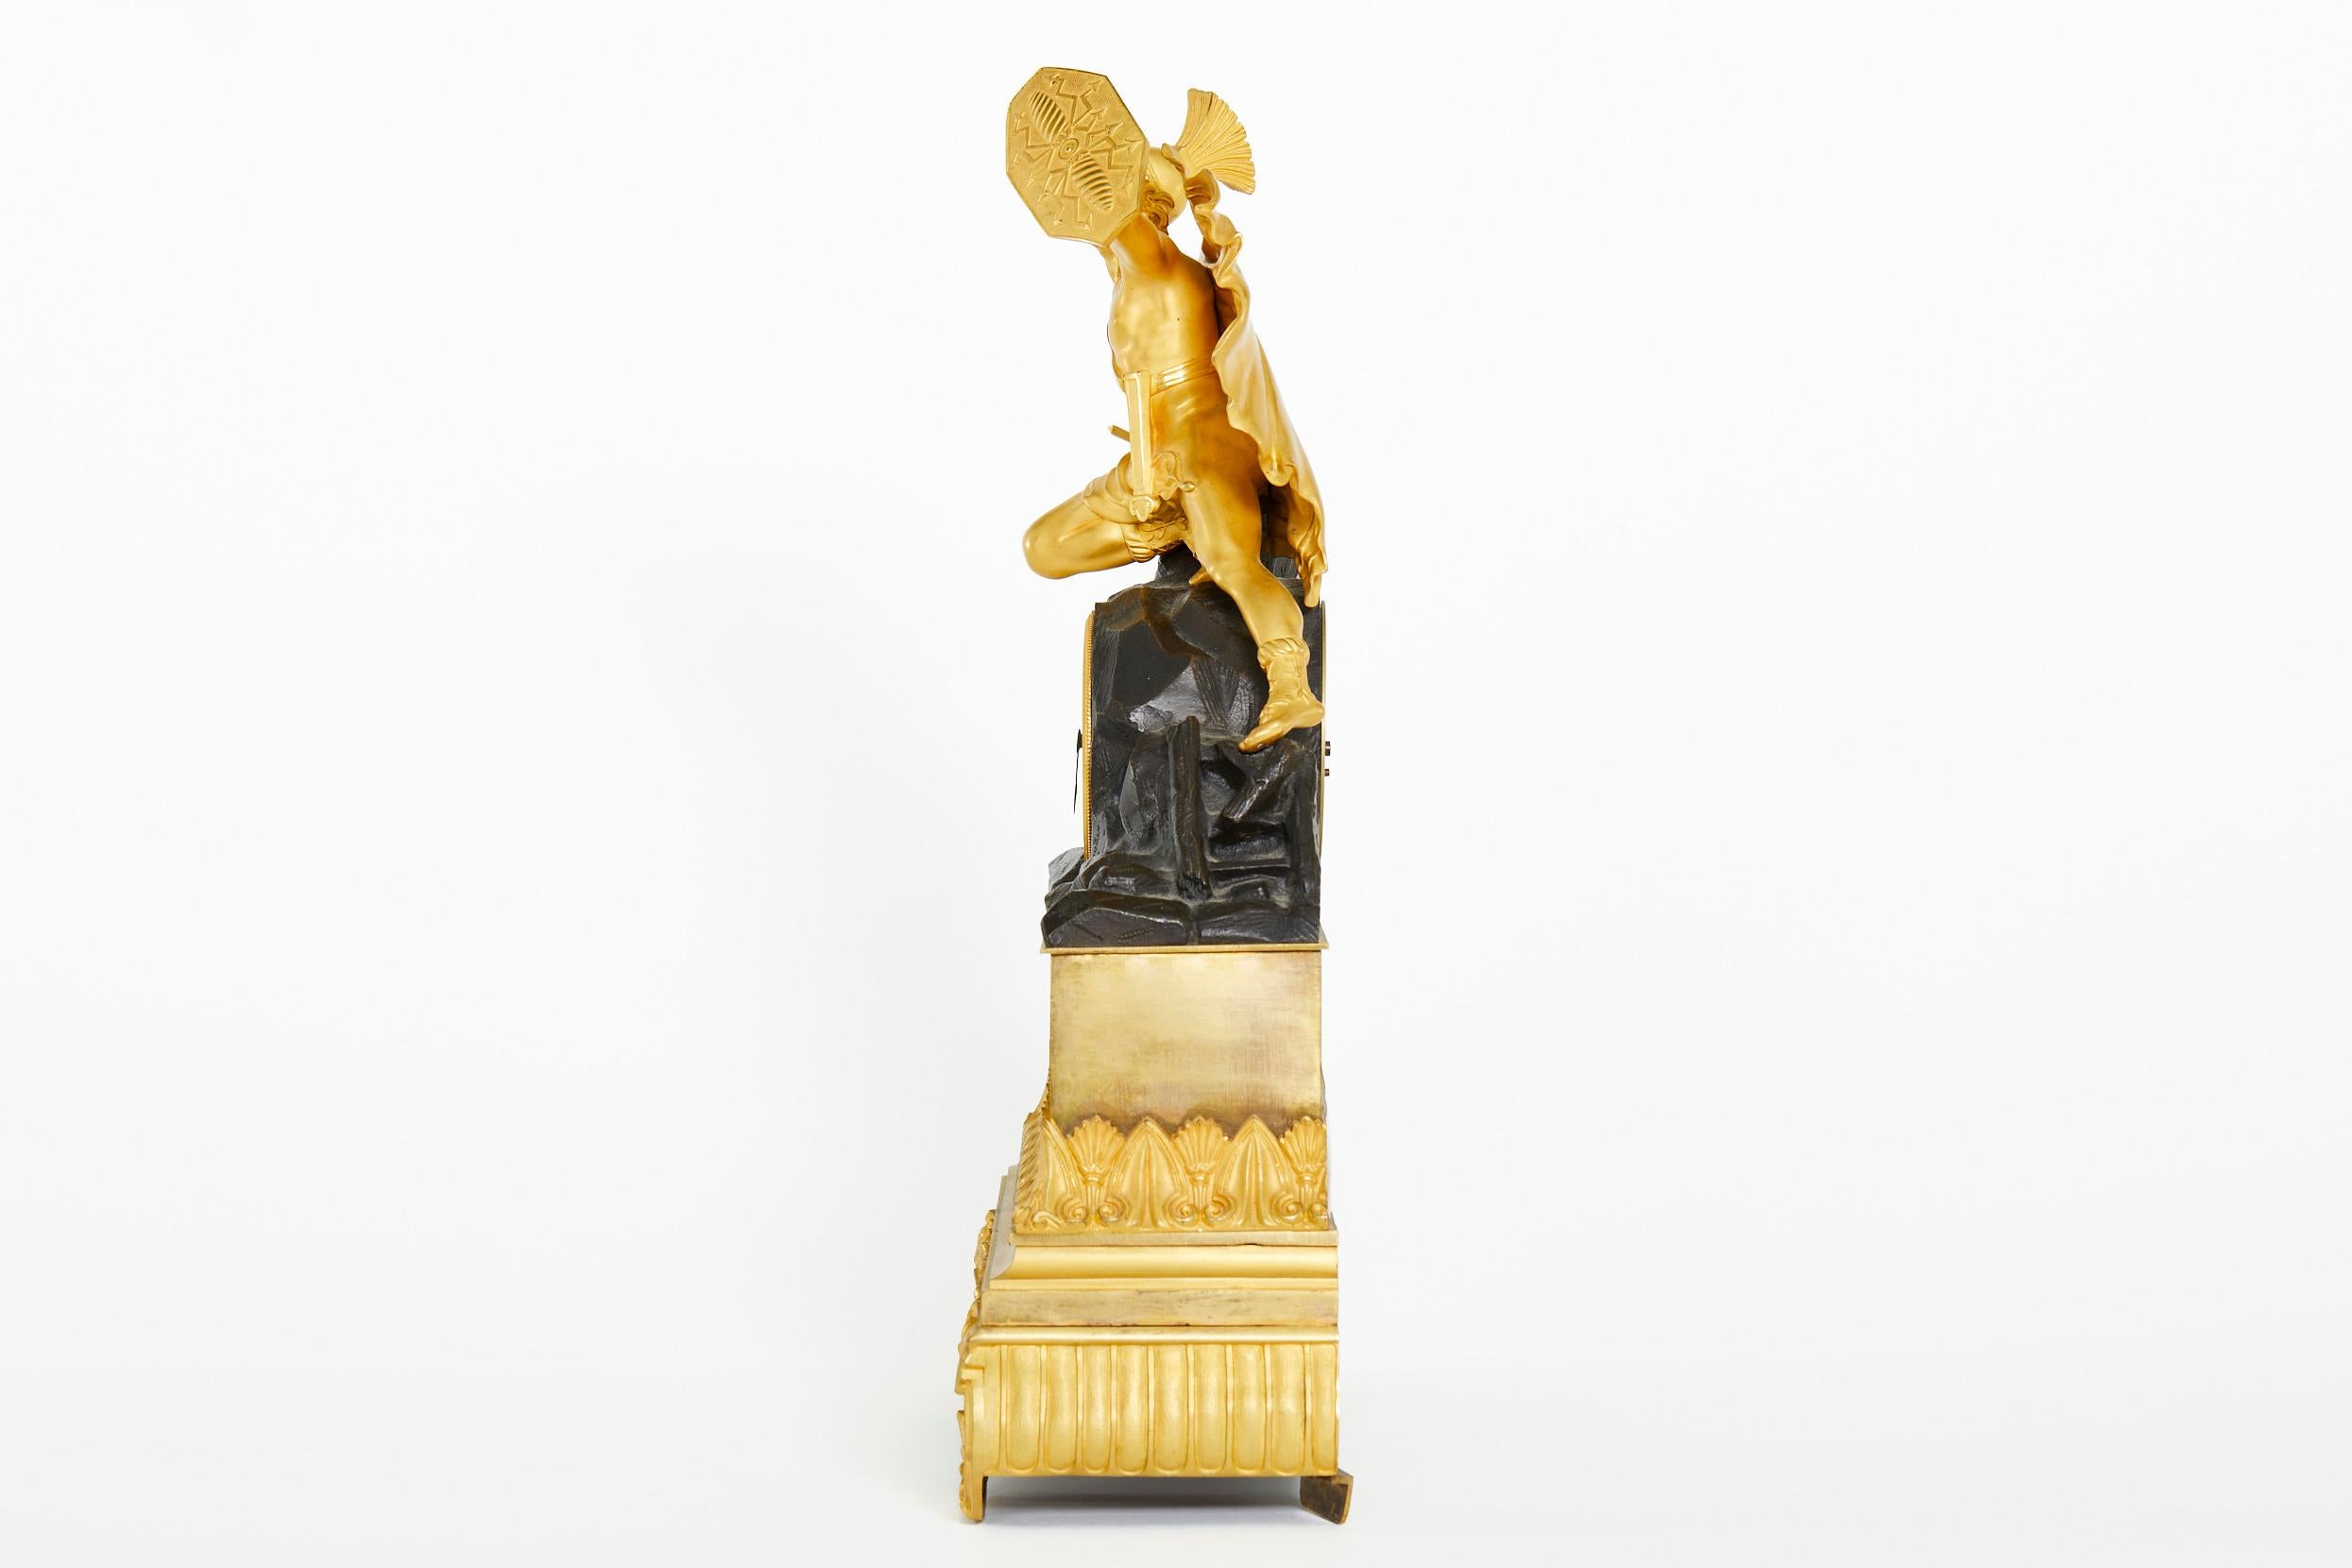 Pendule de cheminée du début du XIXe siècle, de style Charles X, en bronze doré et ornée de motifs figuratifs. L'horloge représente un soldat surmonté tenant un bouclier. Mouvement en laiton à ressort de huit jours, avec sonnerie à cloche et